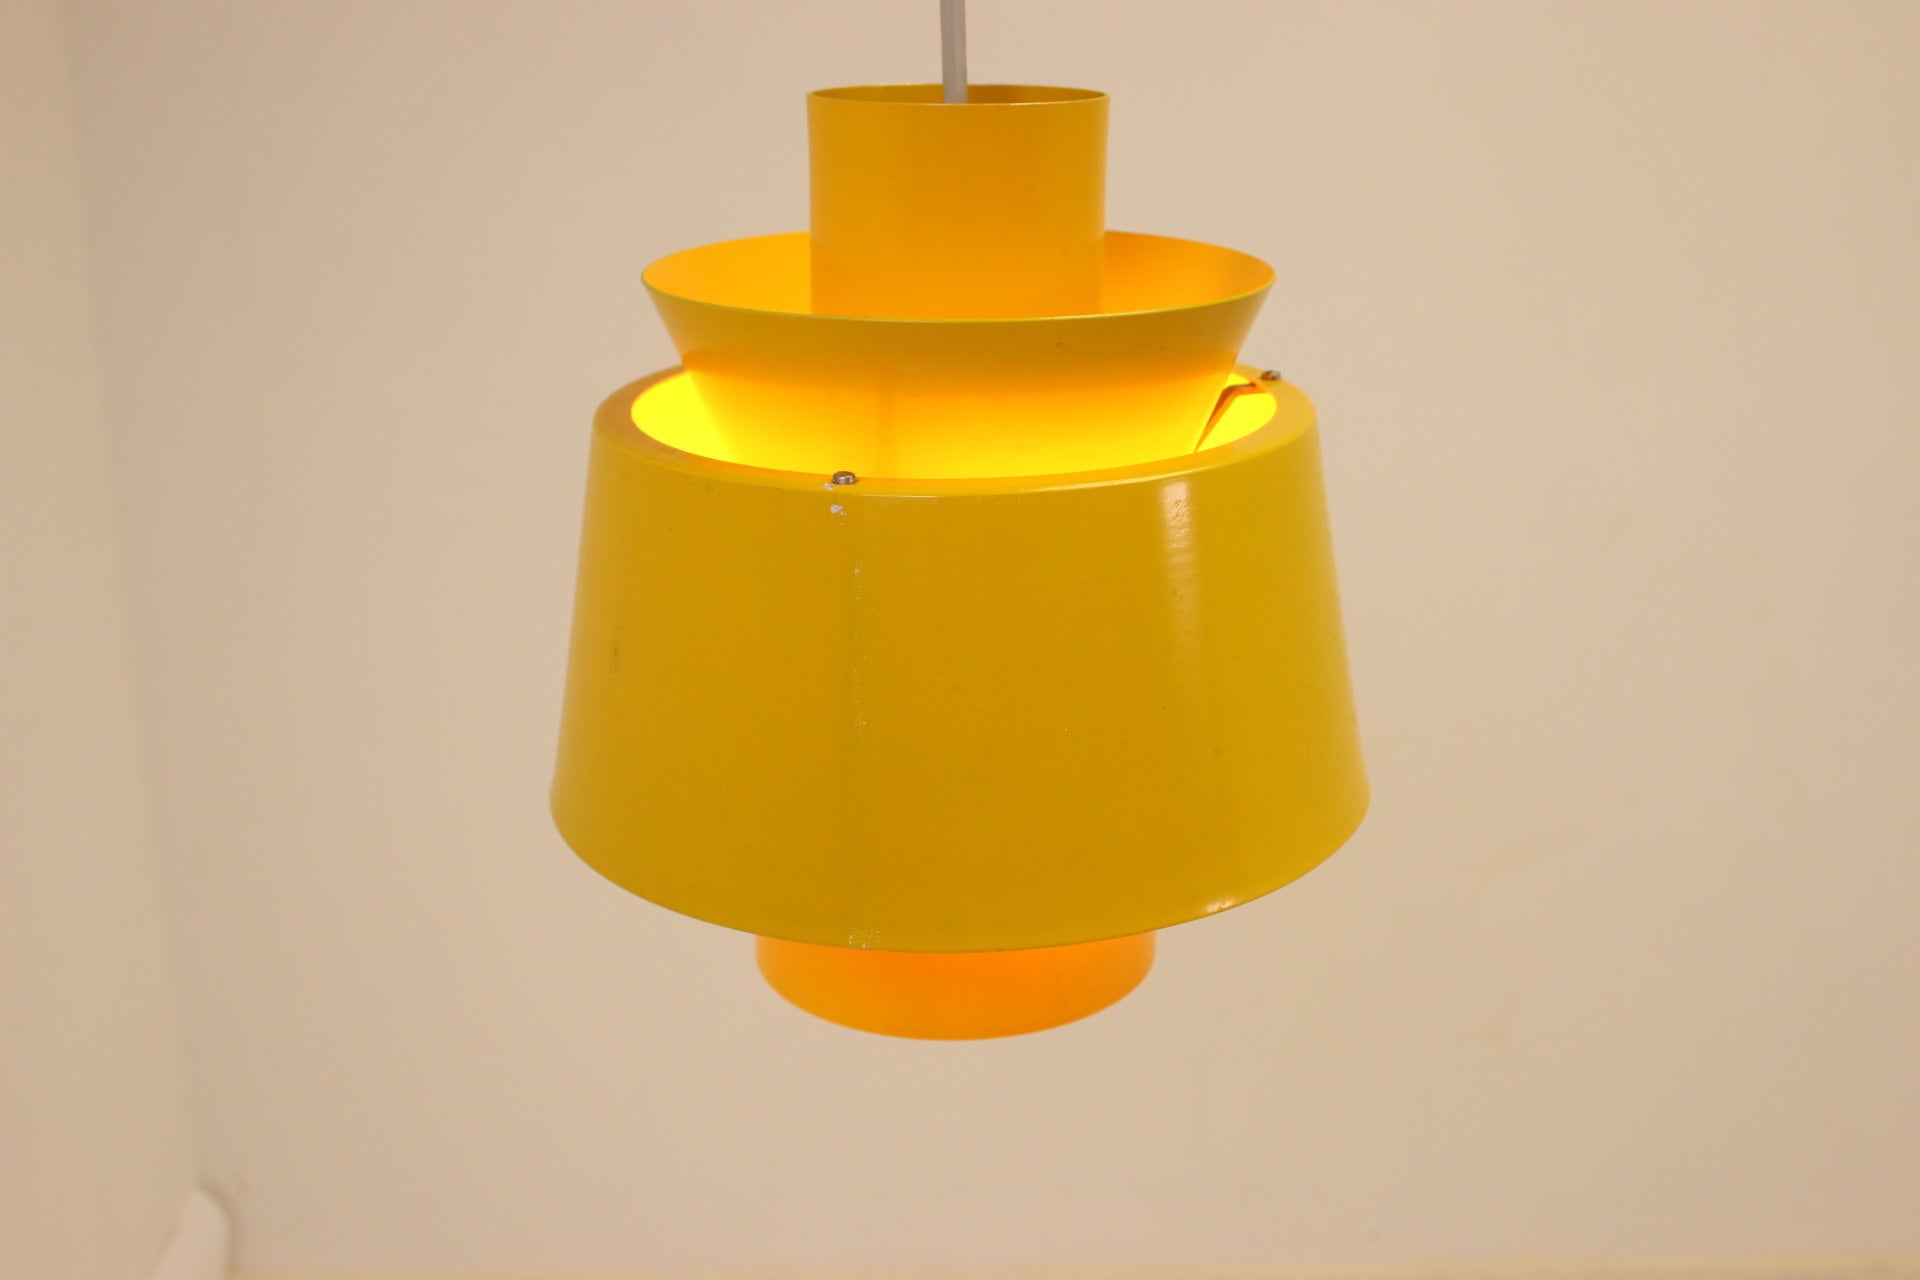 Deens jaren60 Tivoli hanglamp van Jorn Utzon voorkant